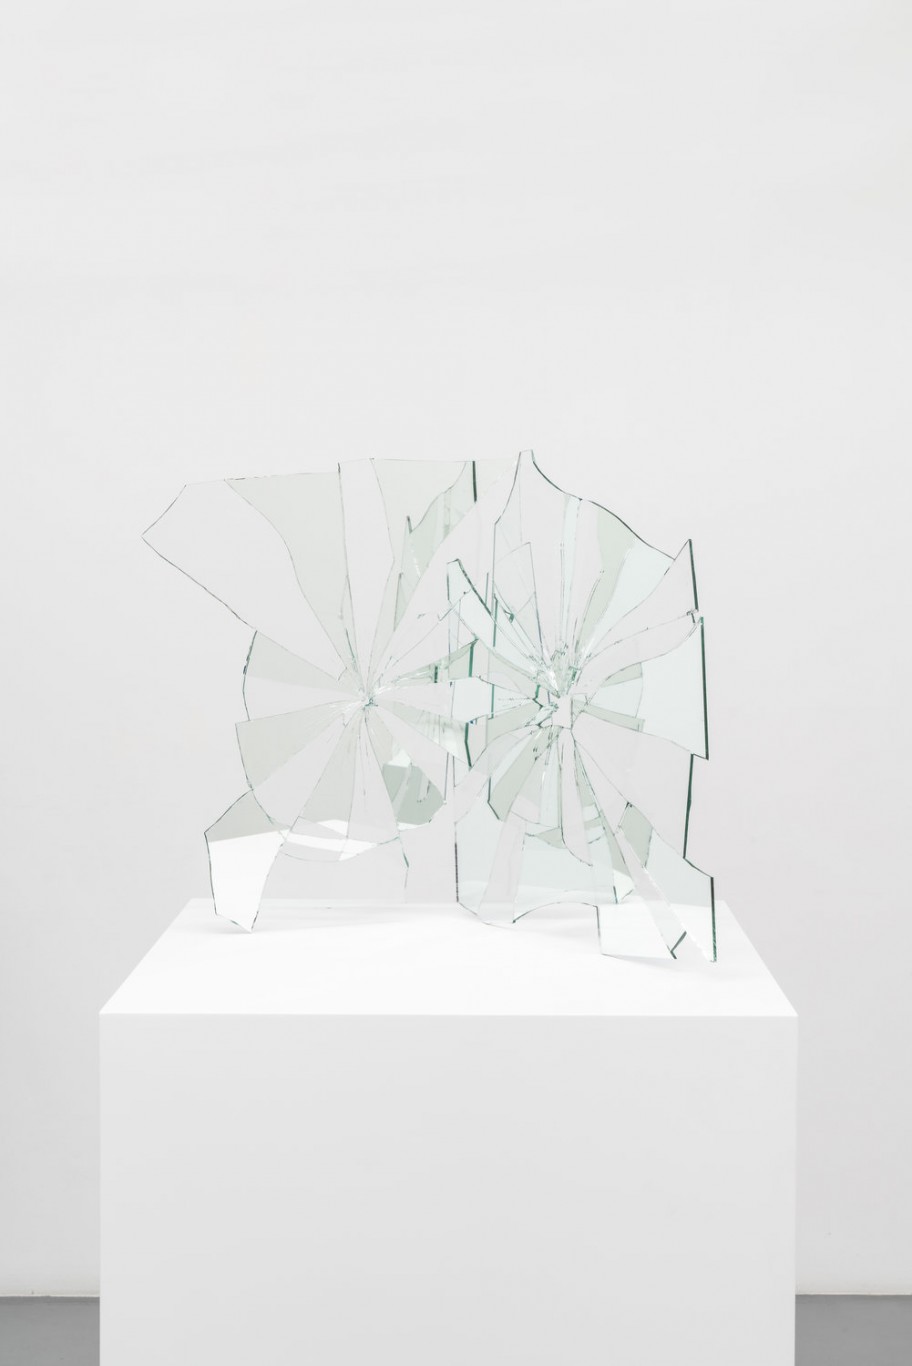 Ariel Schlesinger  Untitled (Broken mirrors), 2019 mirror, glass, glue 59 x 55 x 64 cm 